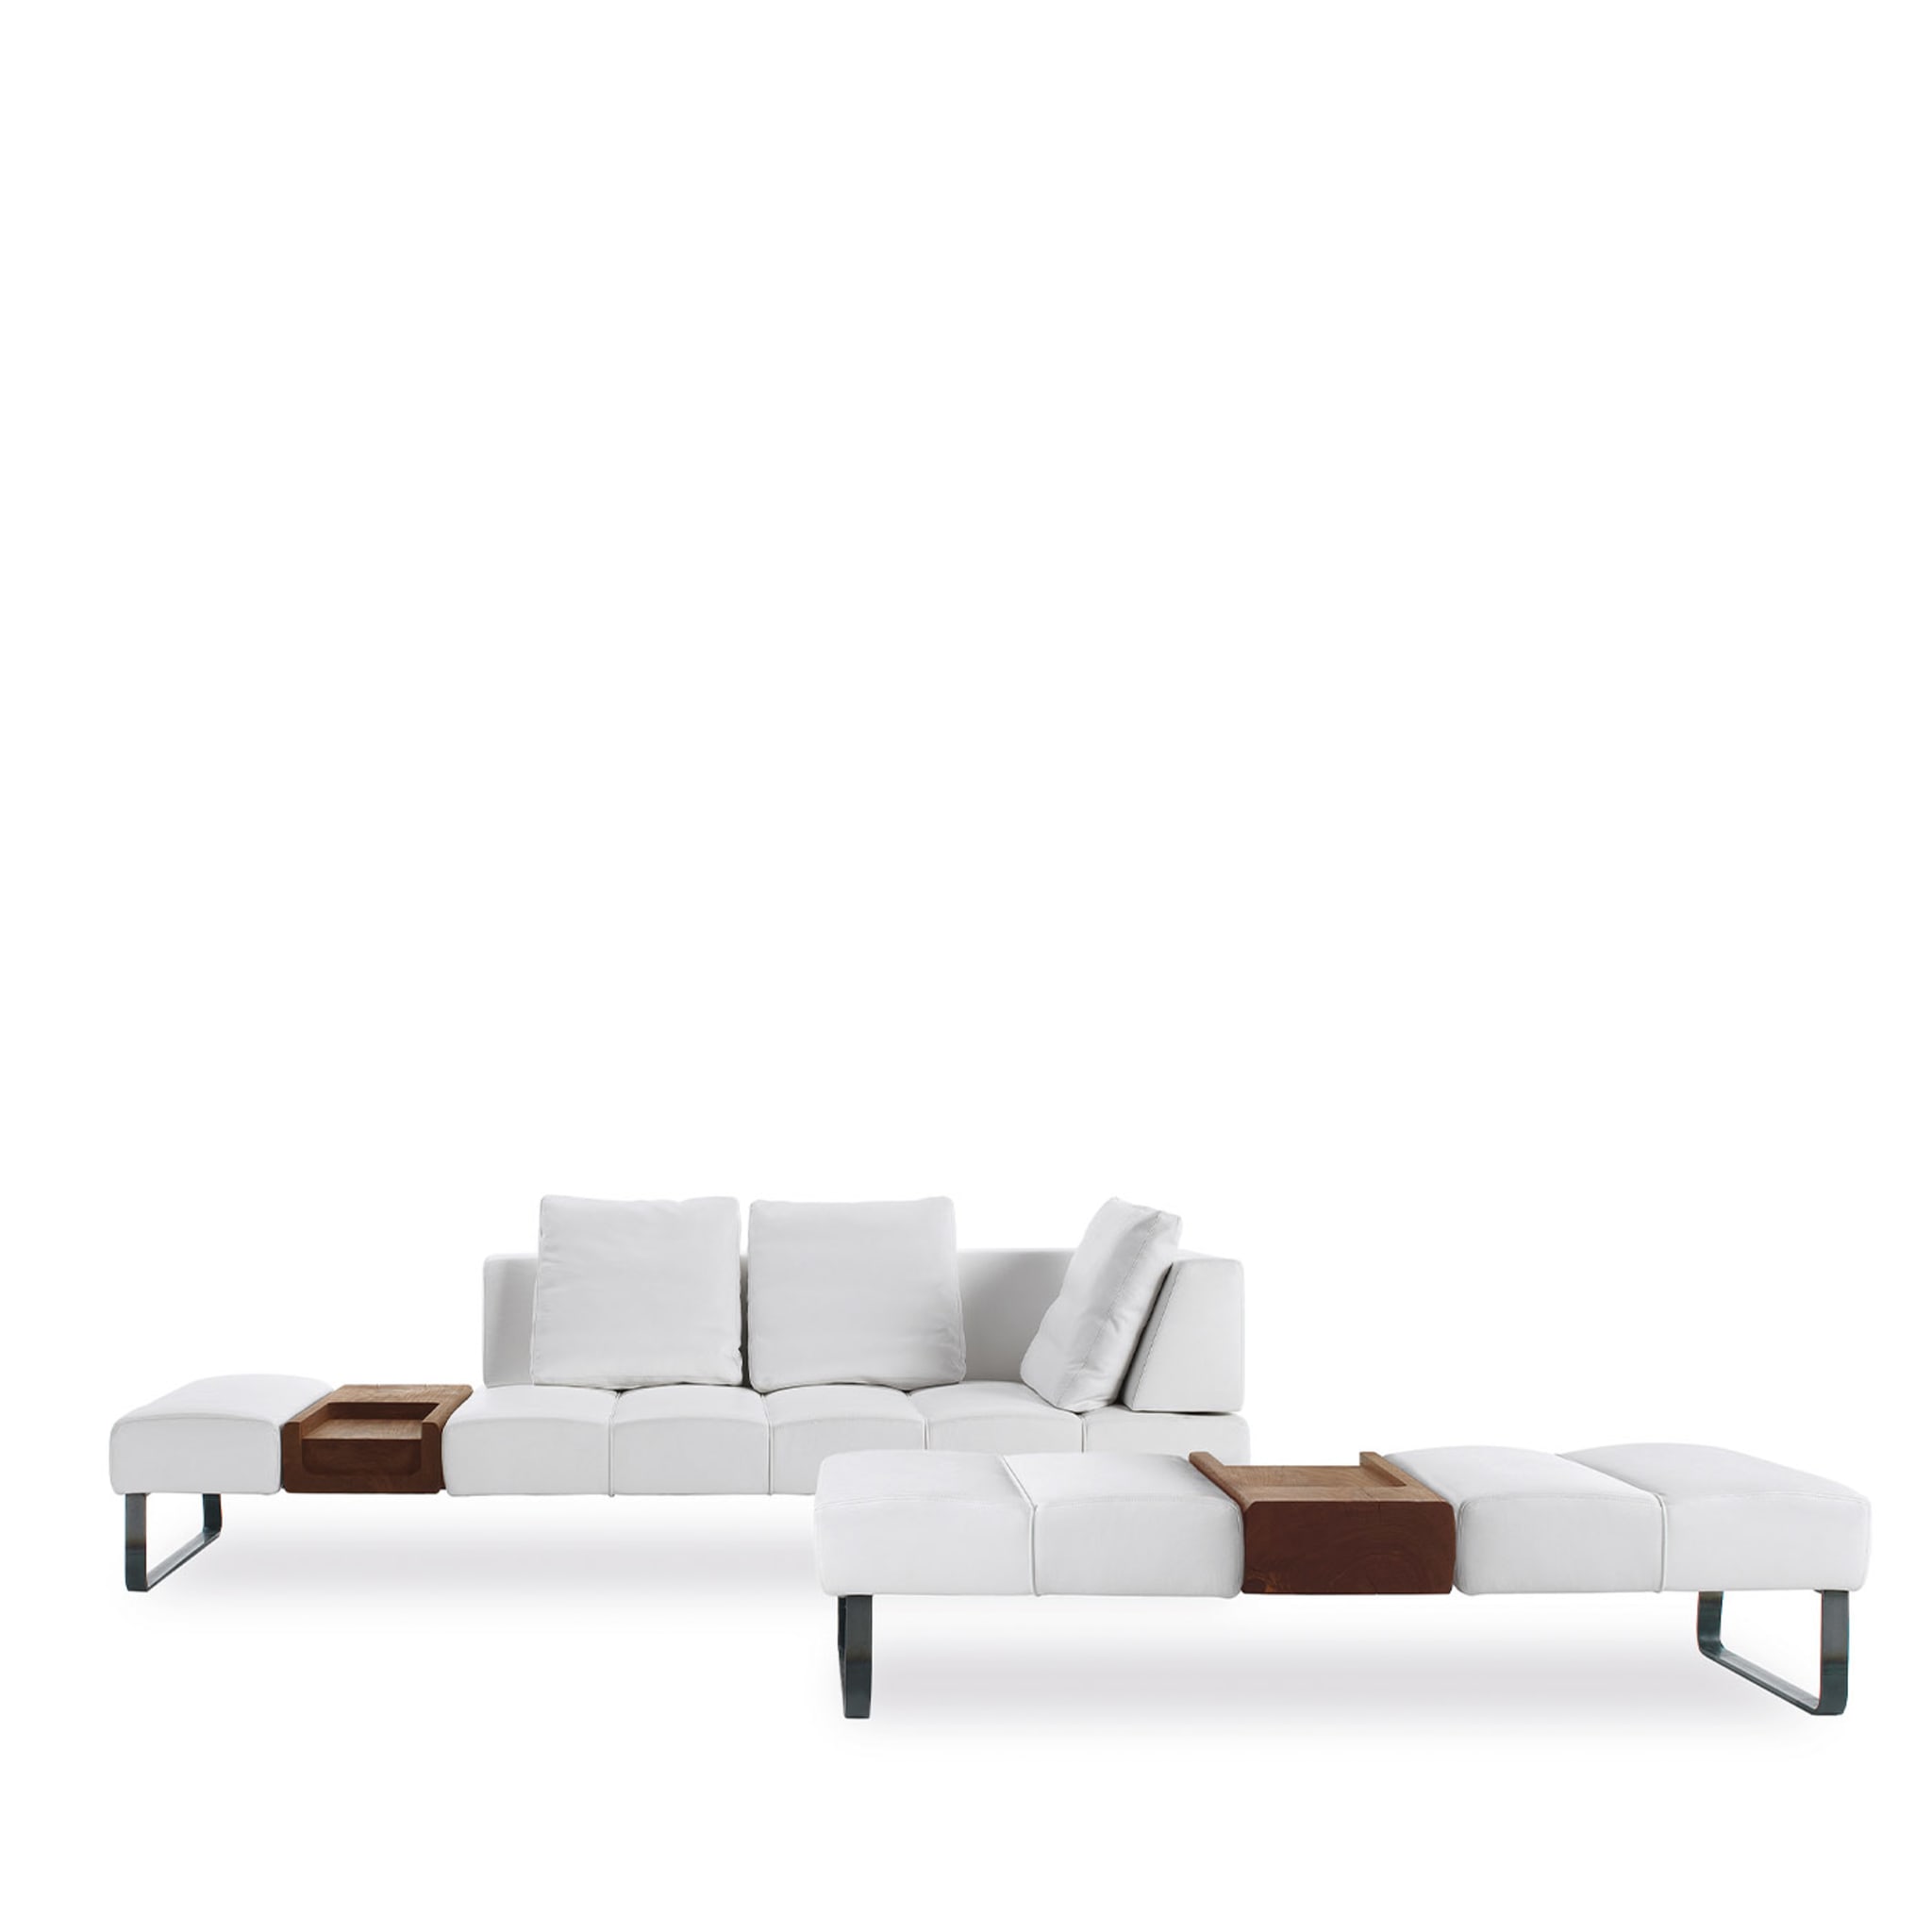 Patmos Asymmetrical White Sofa by Terry Dwan - Alternative view 1